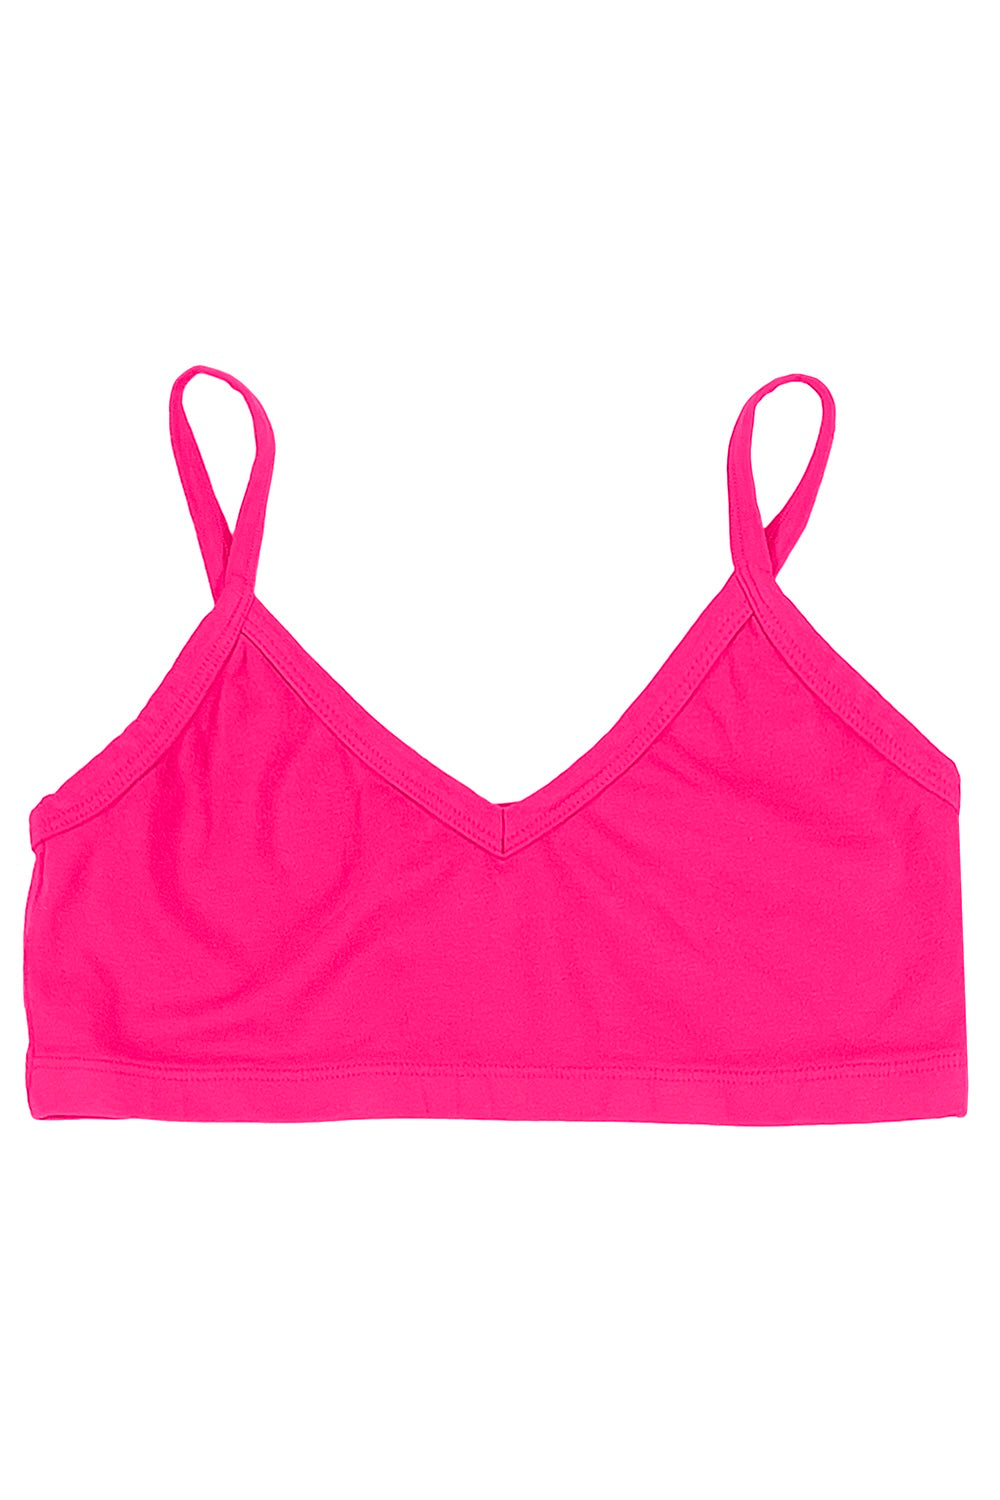 Bralette | Jungmaven Hemp Clothing & Accessories / Color: Pink Grapefruit